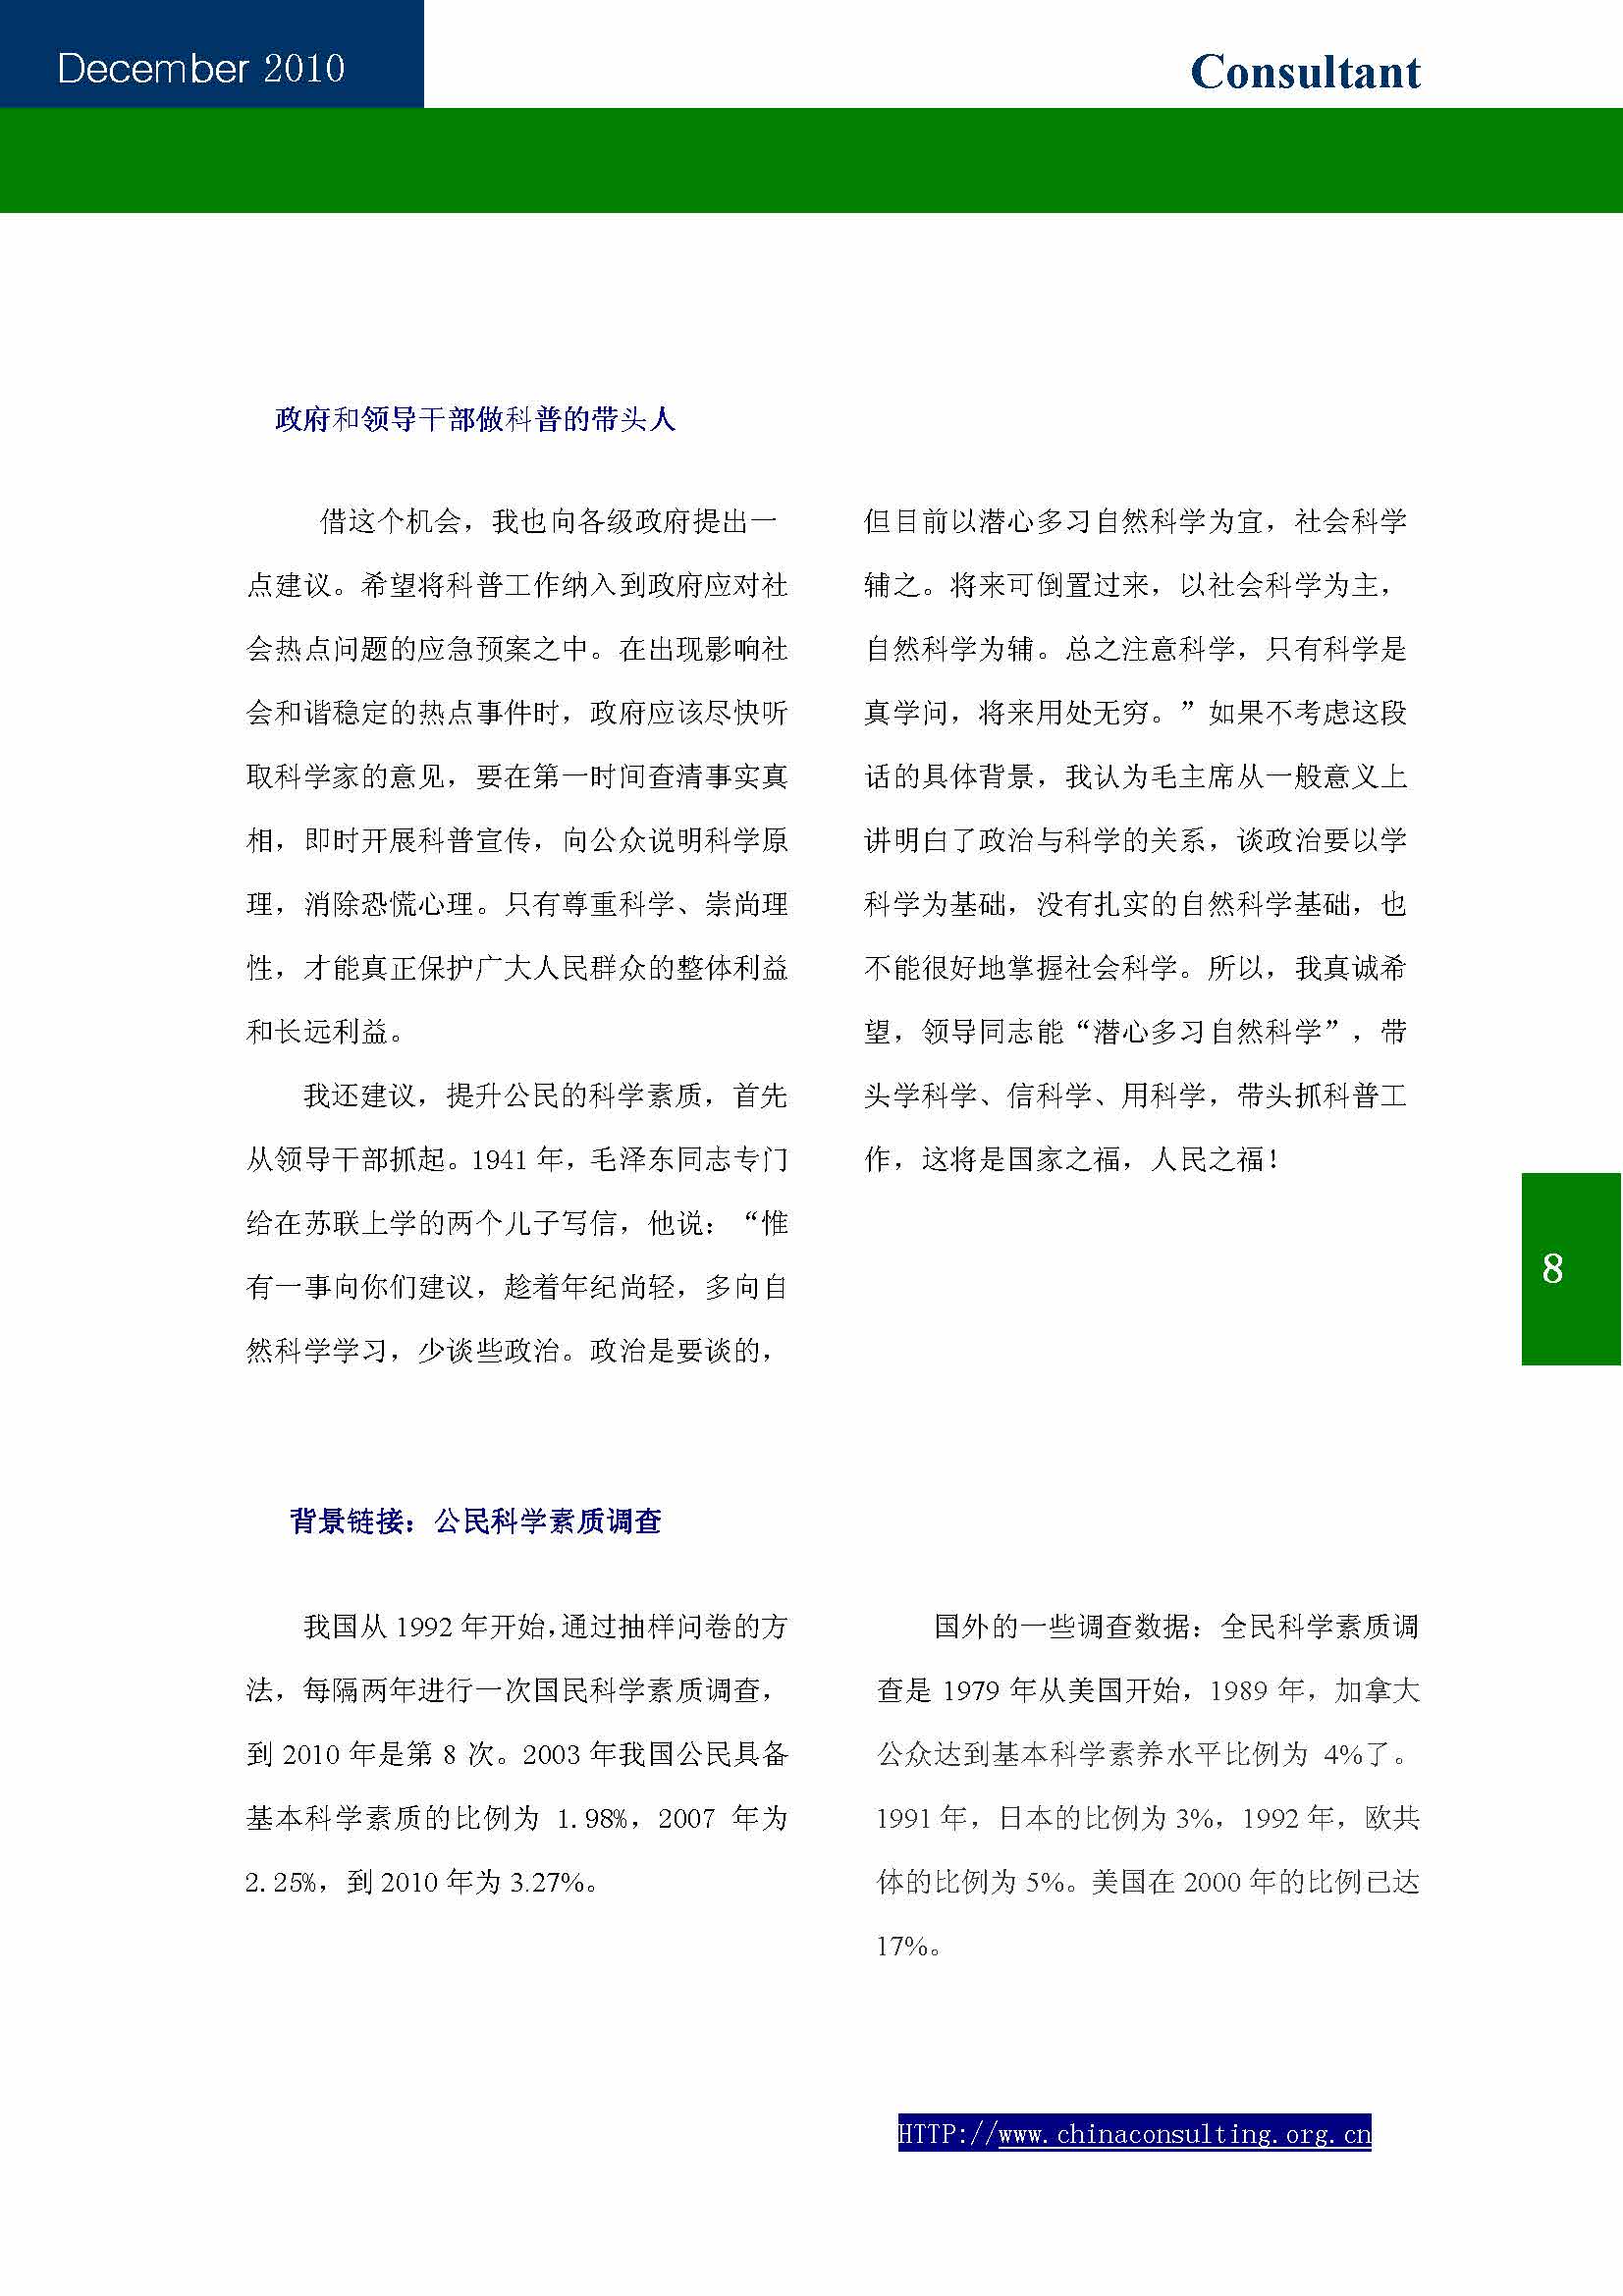 13中国科技咨询协会第十三期会刊_页面_10.jpg